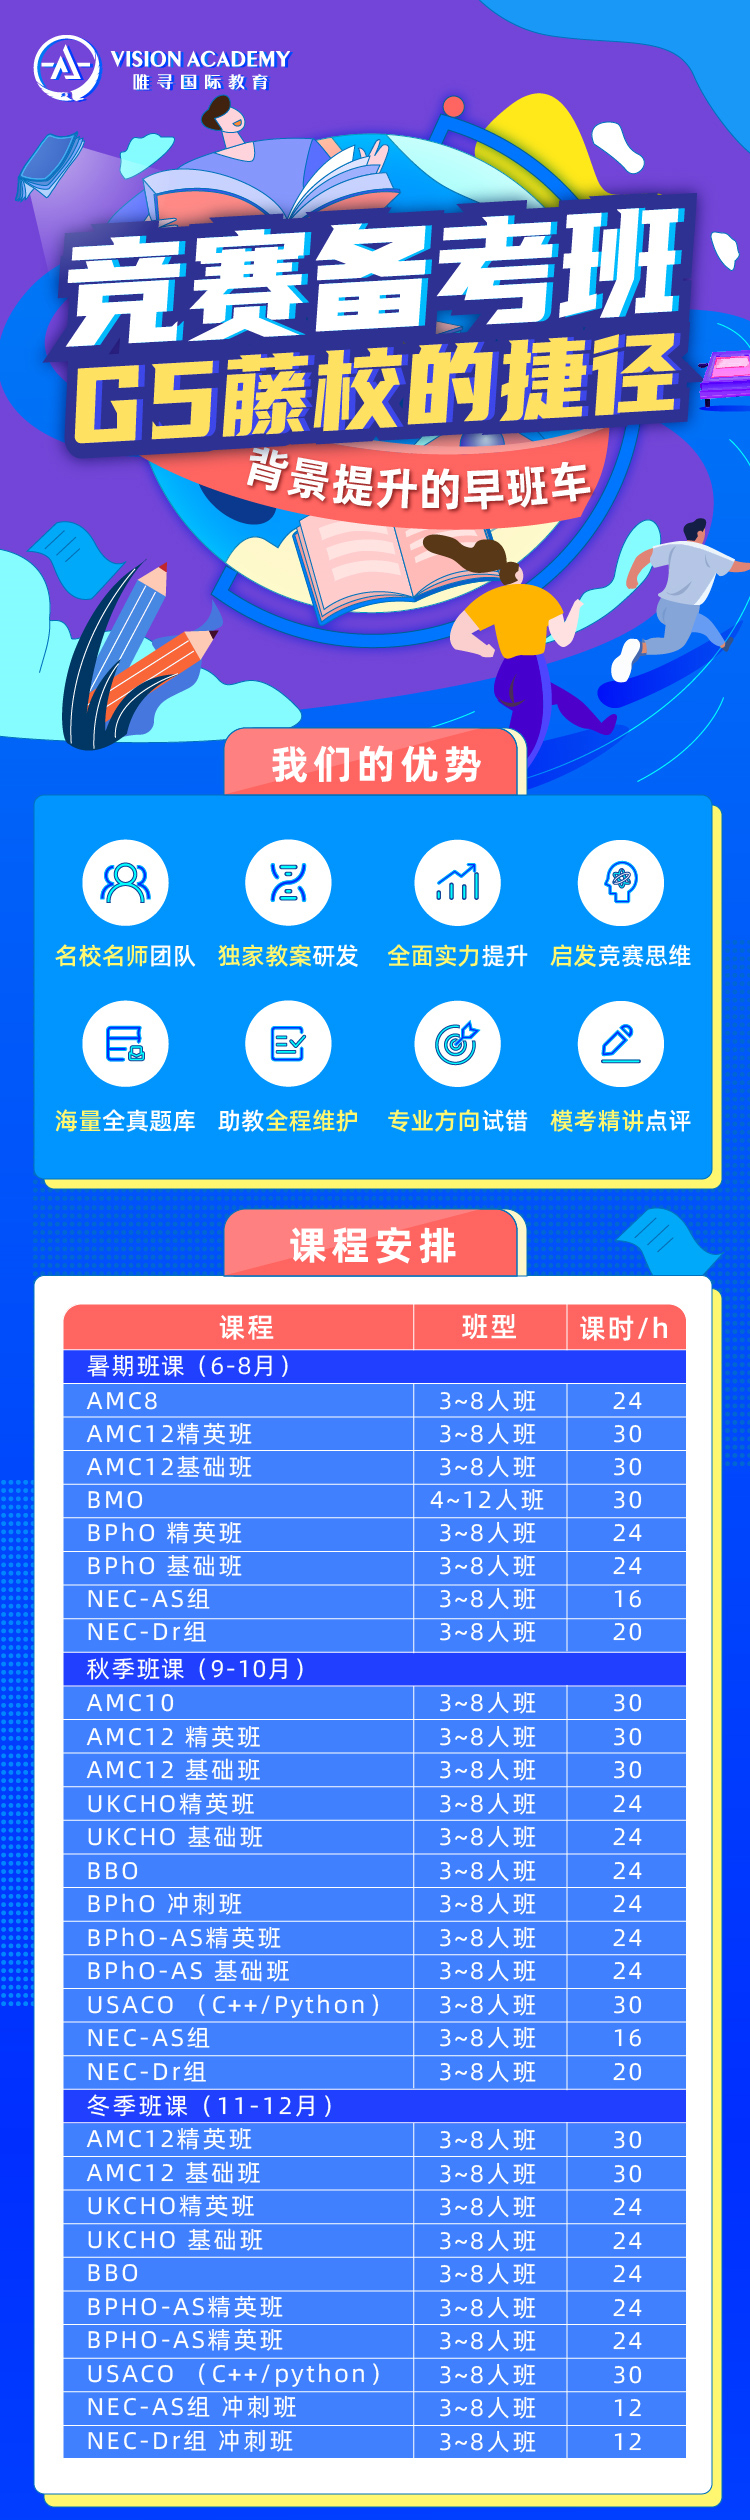 NEC竞赛2021 上海考点介绍 附不同组别真题解析内容图片_4